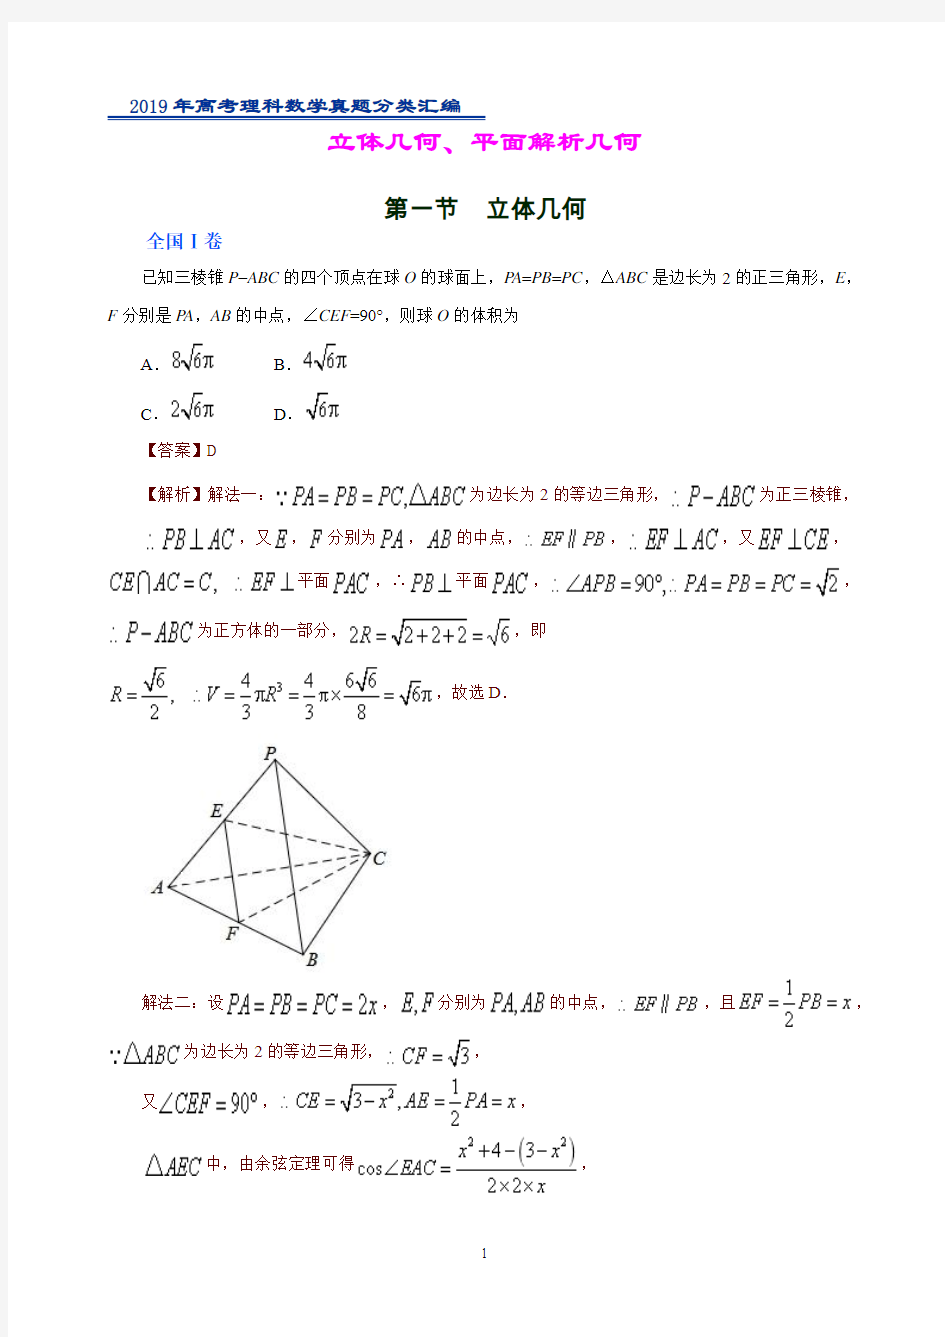 2019年高考理科数学真题分类汇编立体几何、平面解析几何